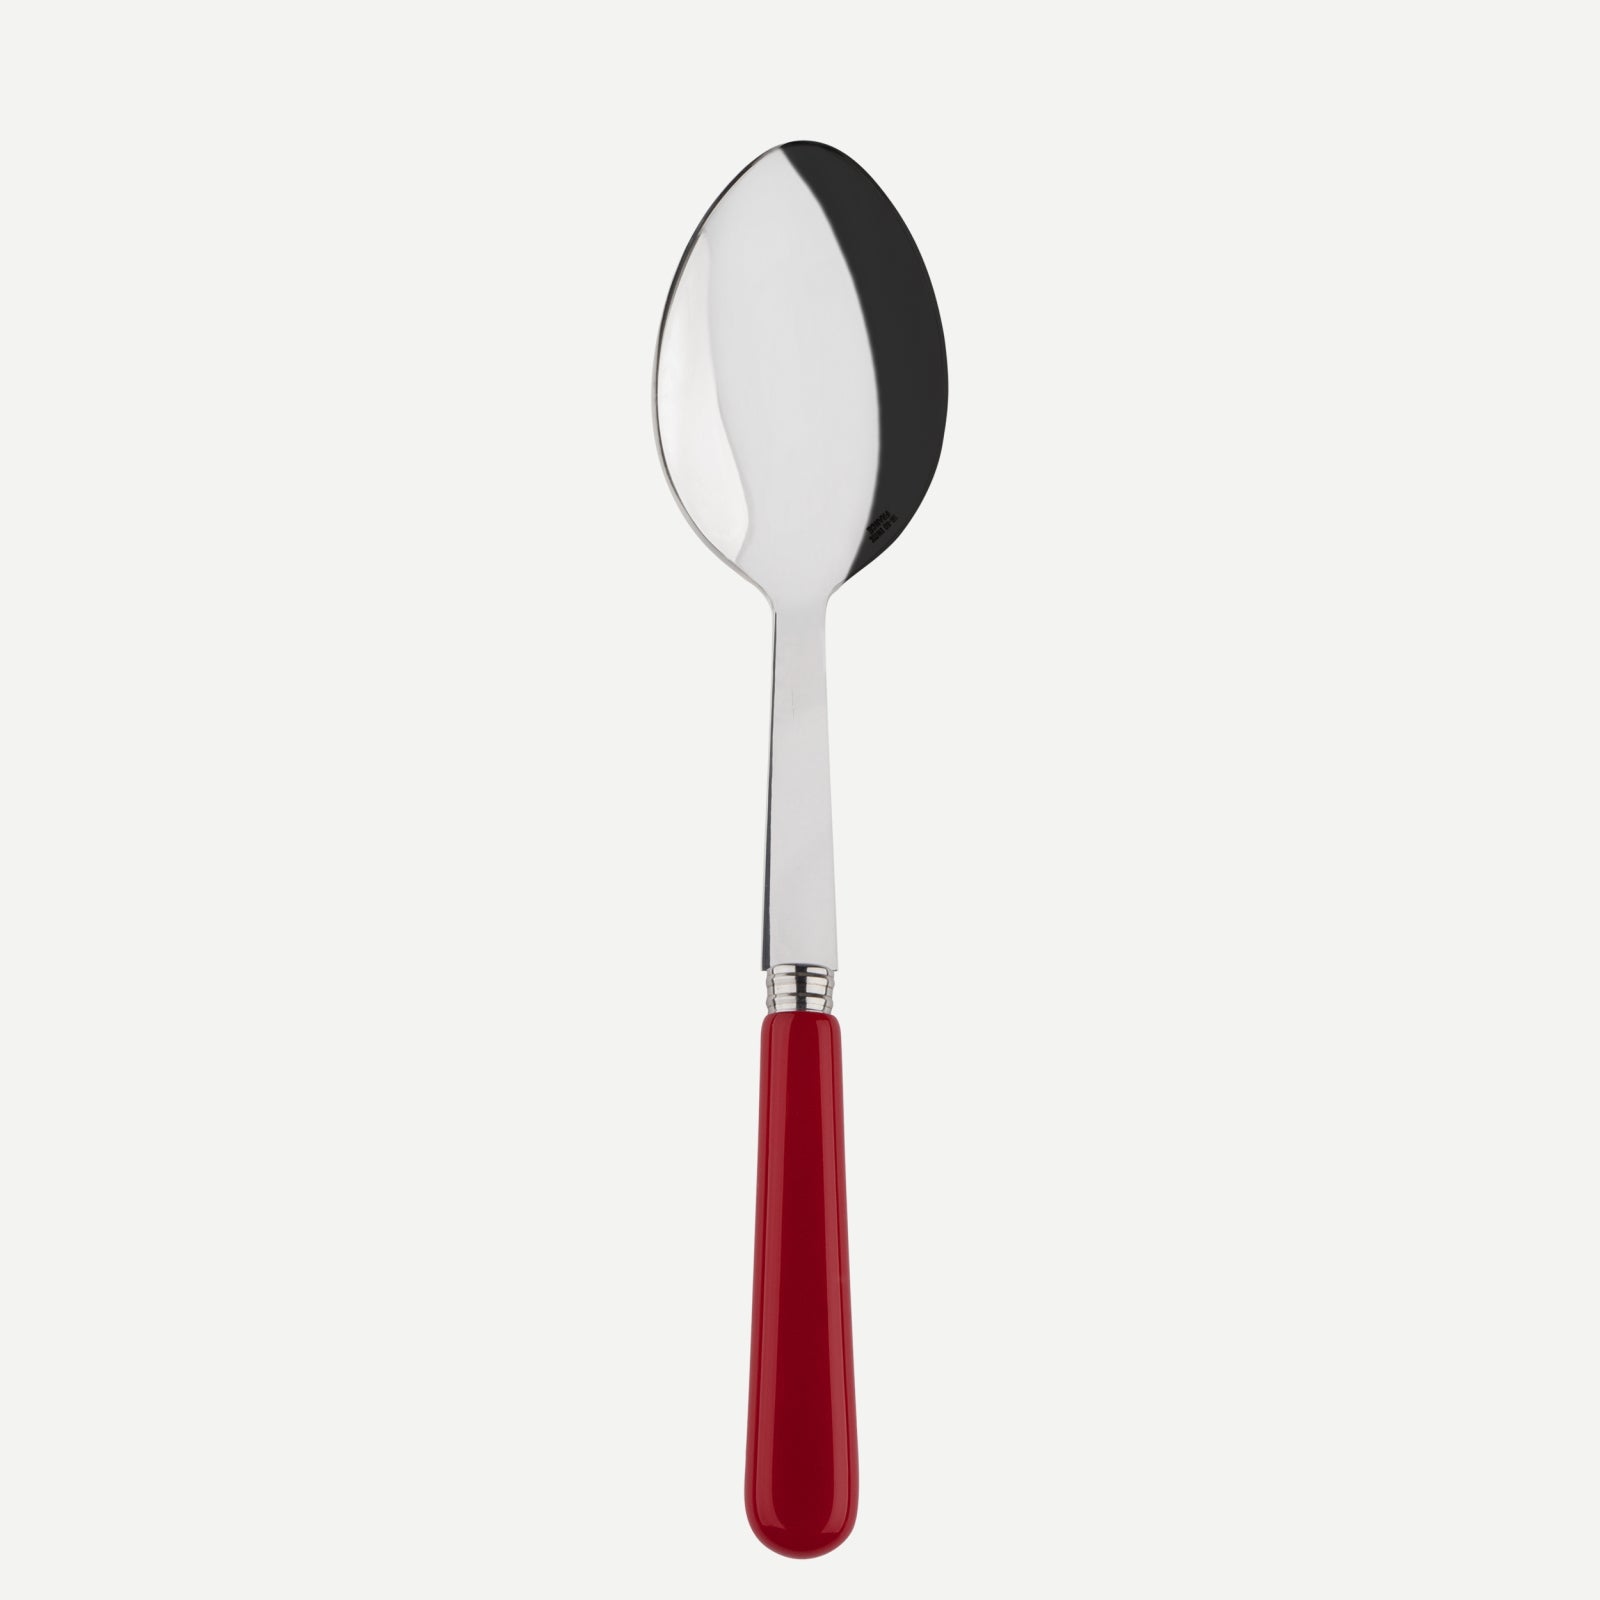 Serving spoon - Pop unis - Burgundy